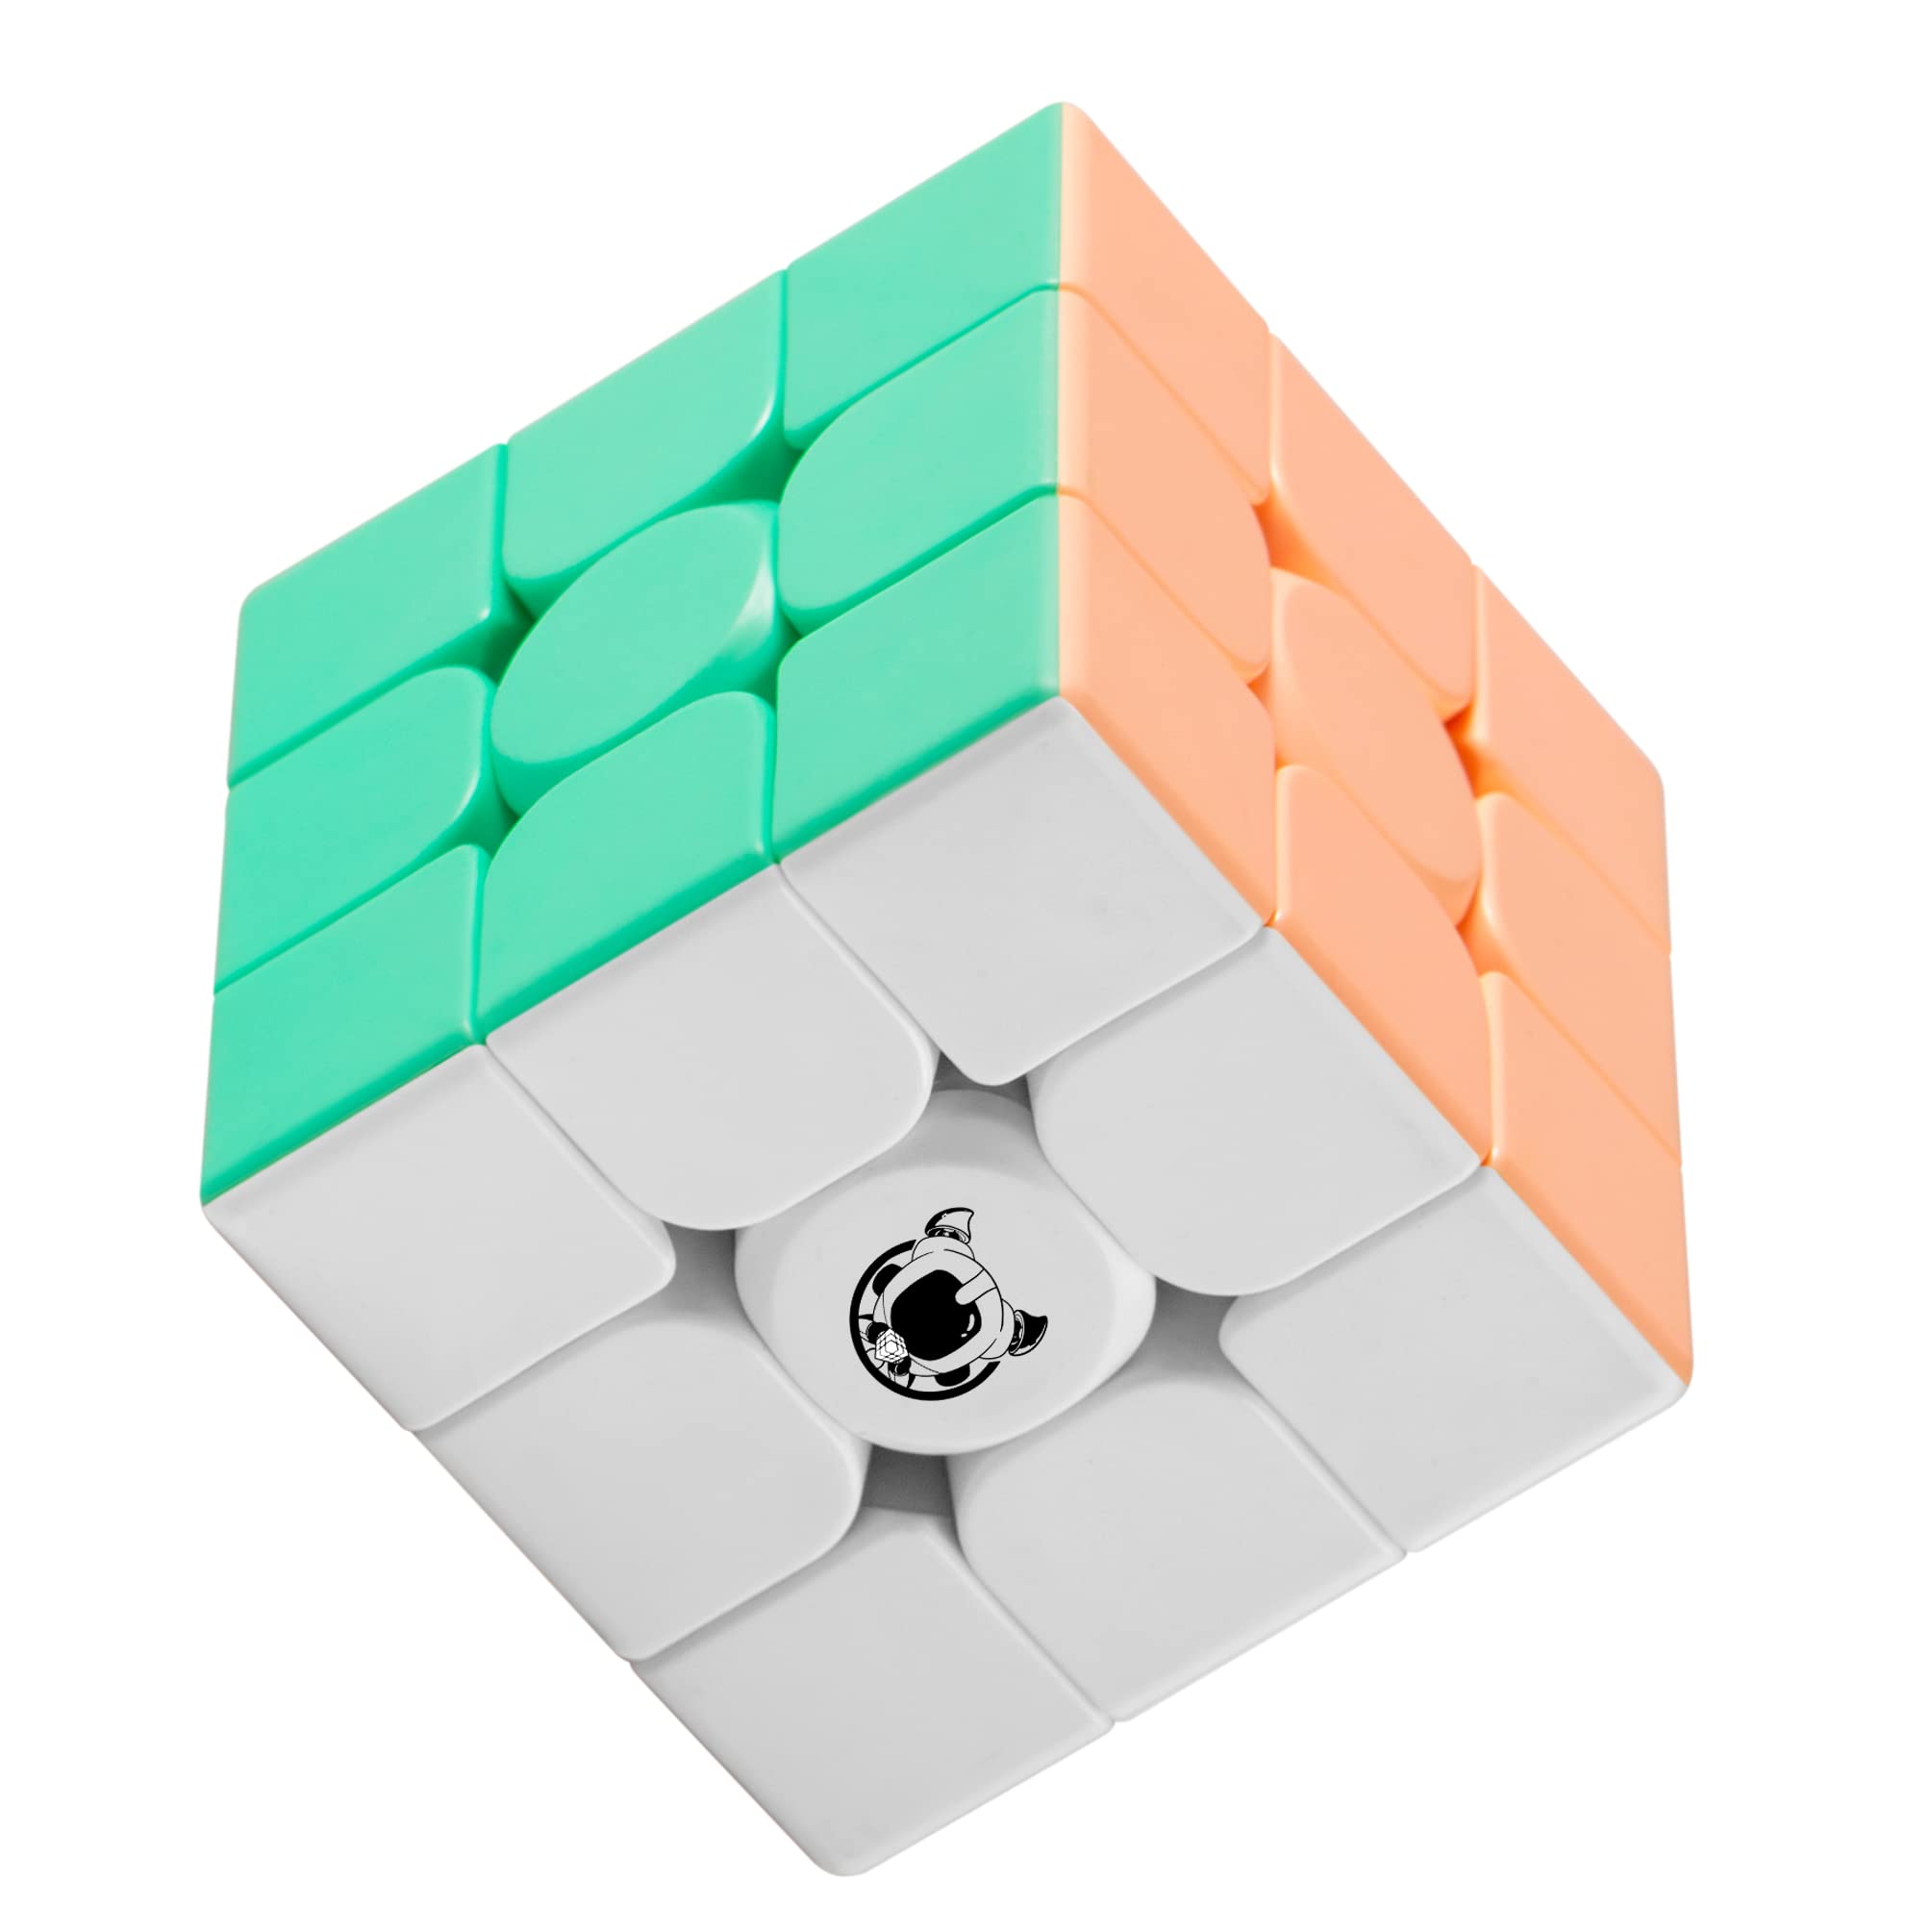 マカロン マジックキューブ 子供 ギフト クリスマス プレゼント マジックキューブ 公式版 2×2、3×3、4×4、5×5 魔方 プロ向け 回転スムーズ 安定感 知育玩具 Magic Cube (3x3x3)